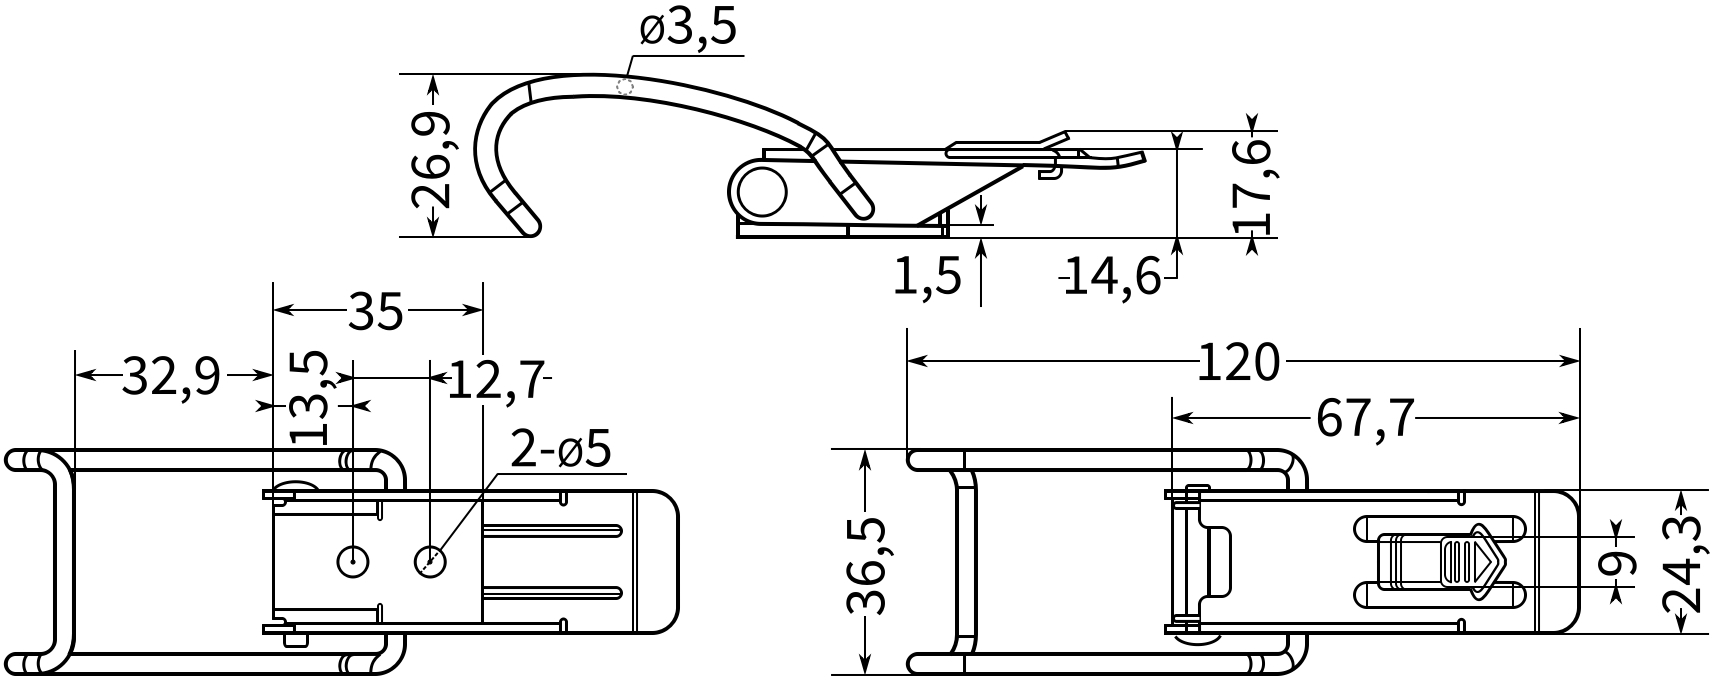 Защелка для крышек и ящиков L=120 B259-3 - схема и размеры